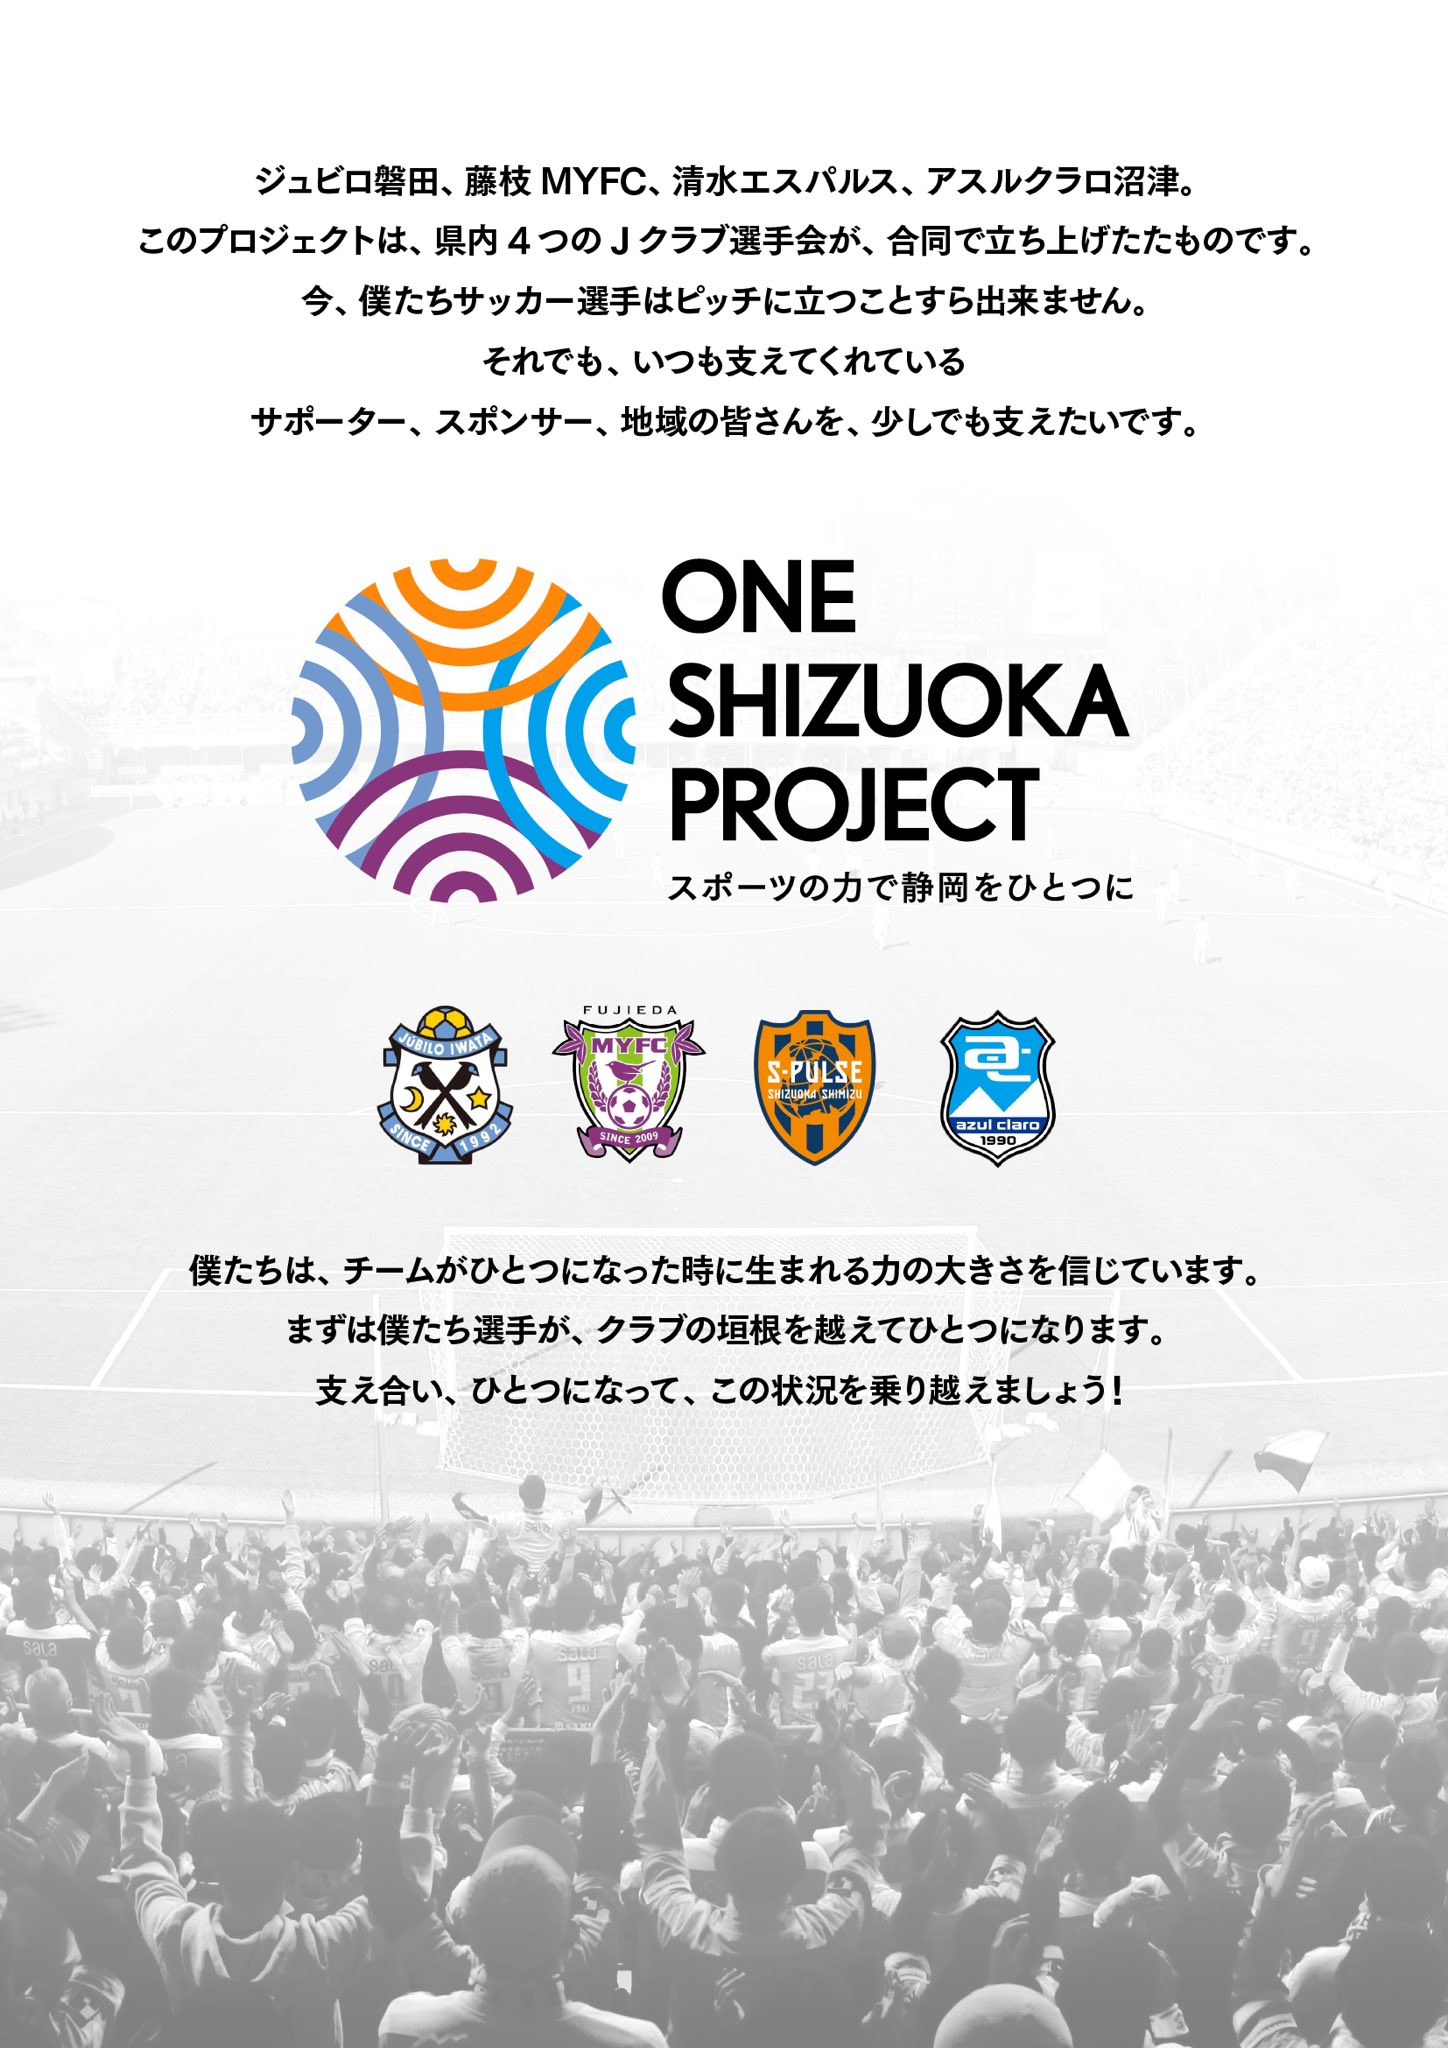 One Shizuoka Project Oneshizuoka Twitter